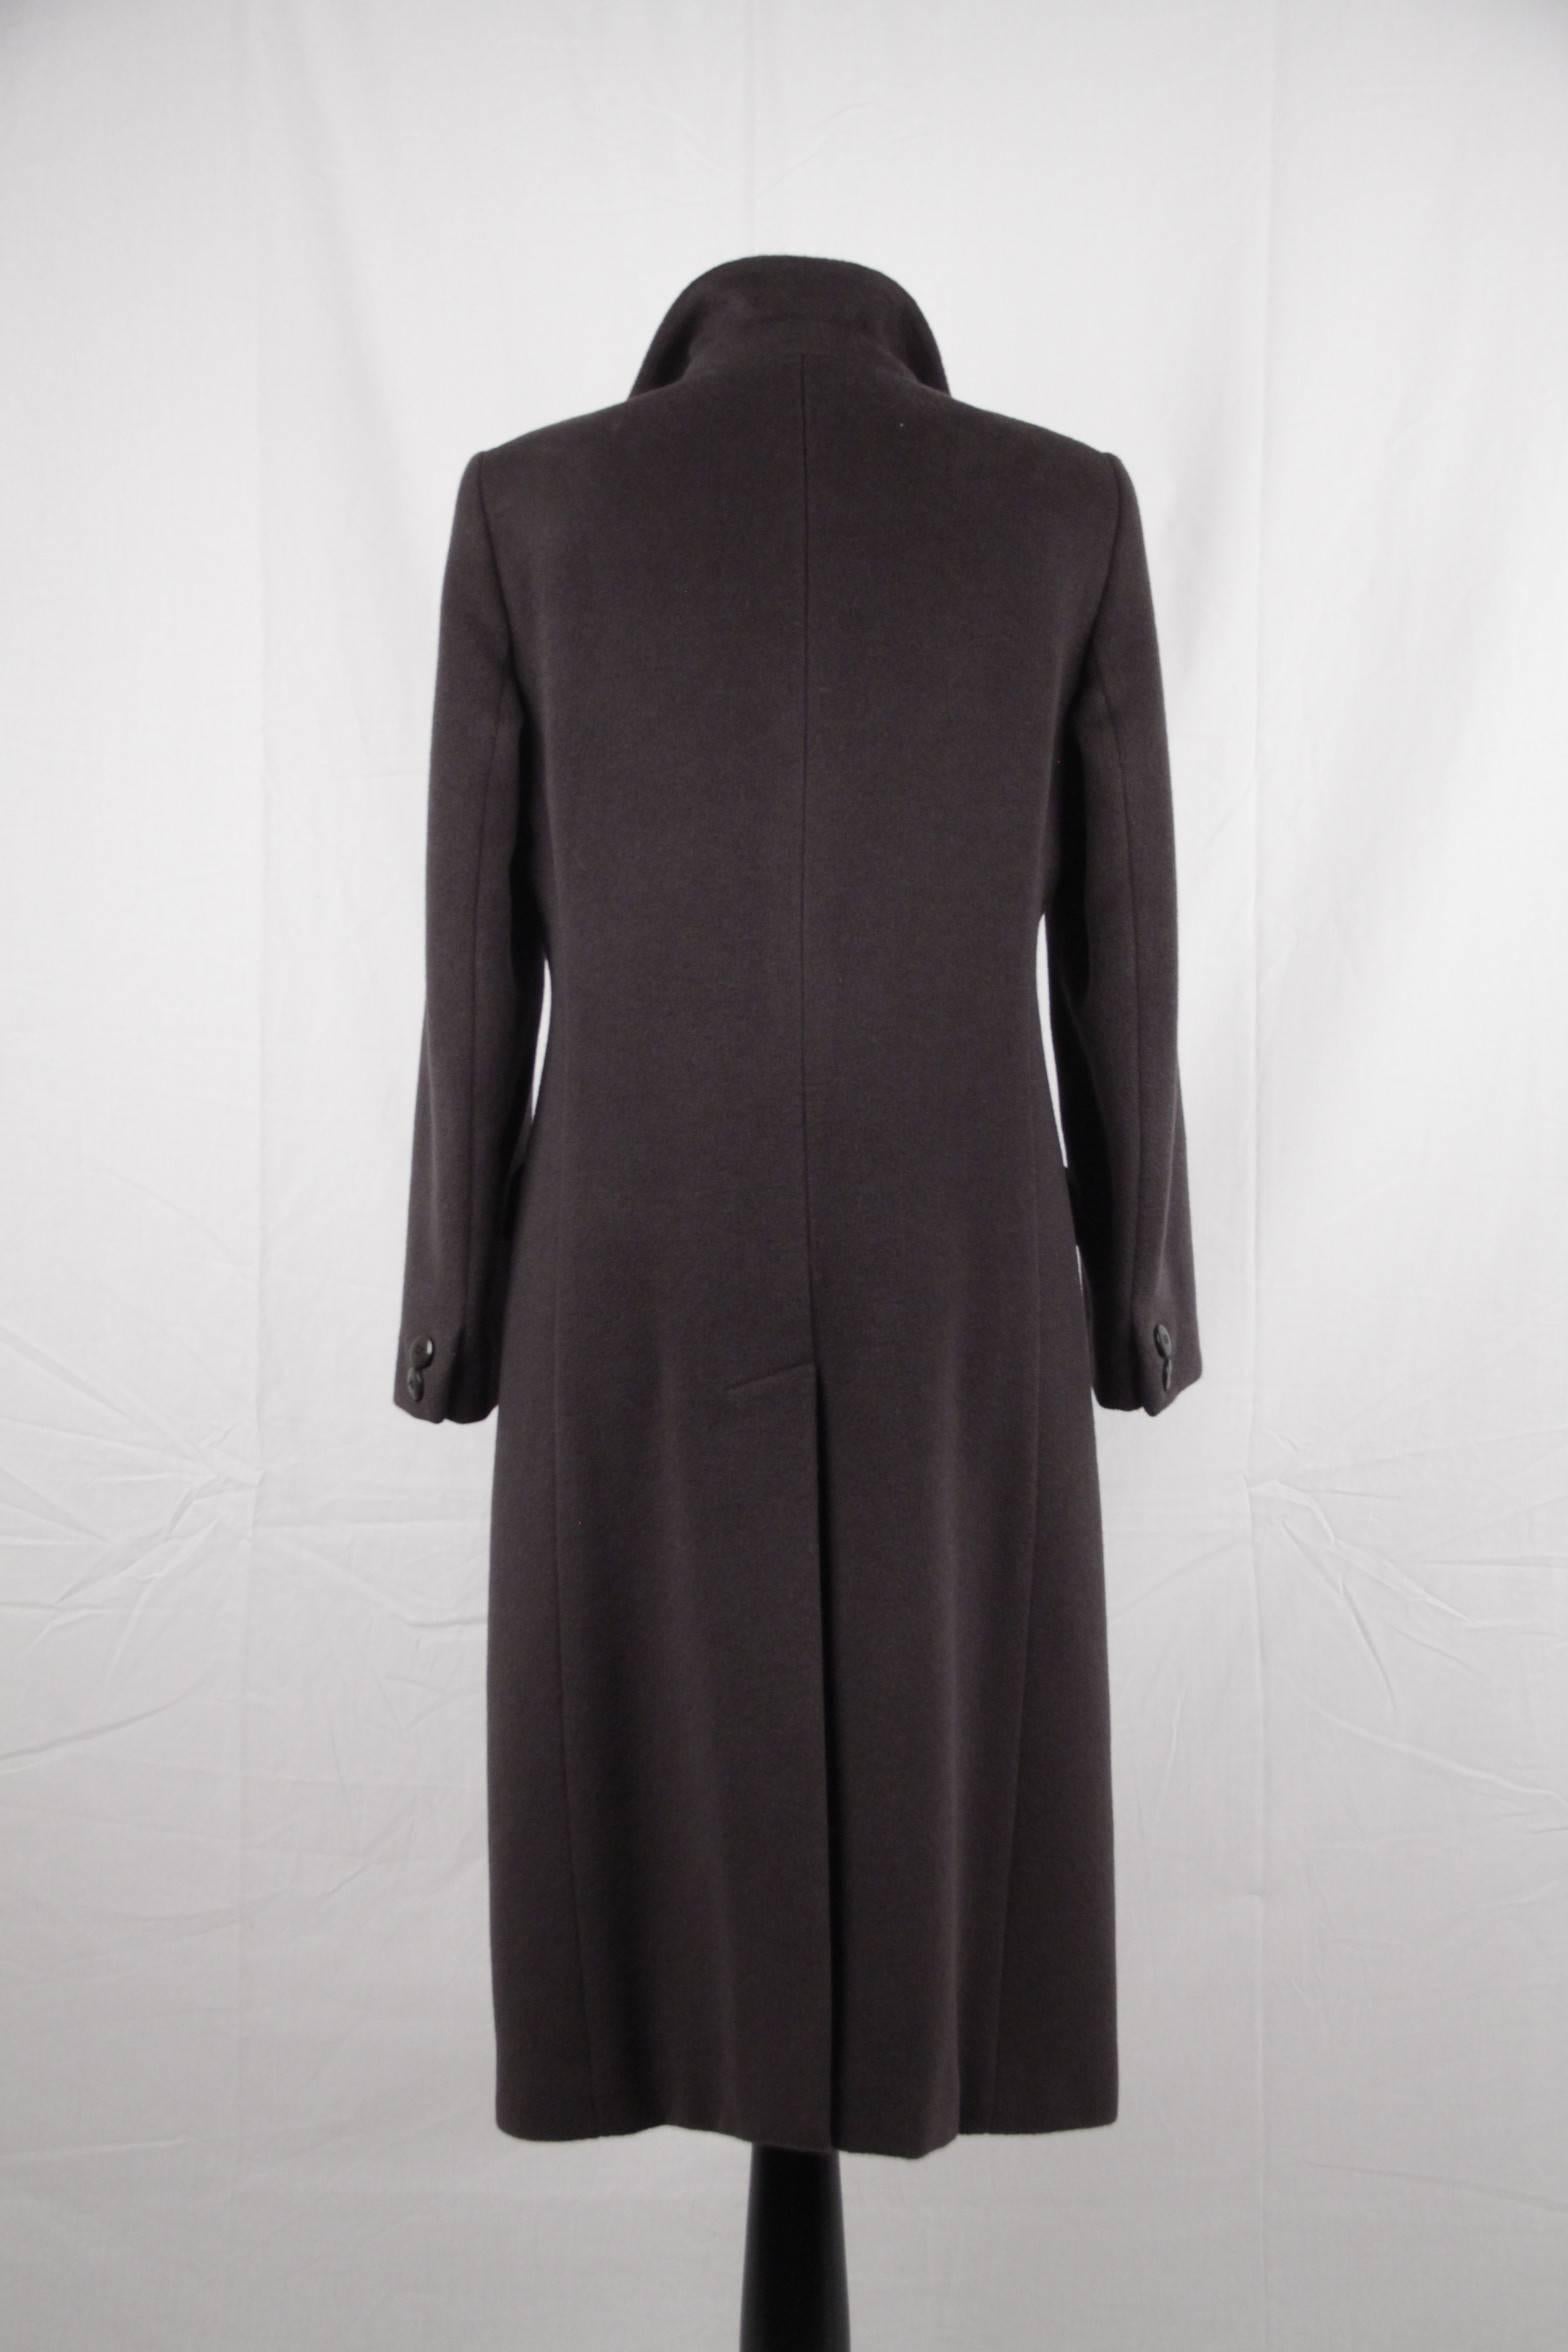 ARMANI COLLEZIONI Anthracite Gray Wool & Cashmere COAT Size 40 In Good Condition In Rome, Rome